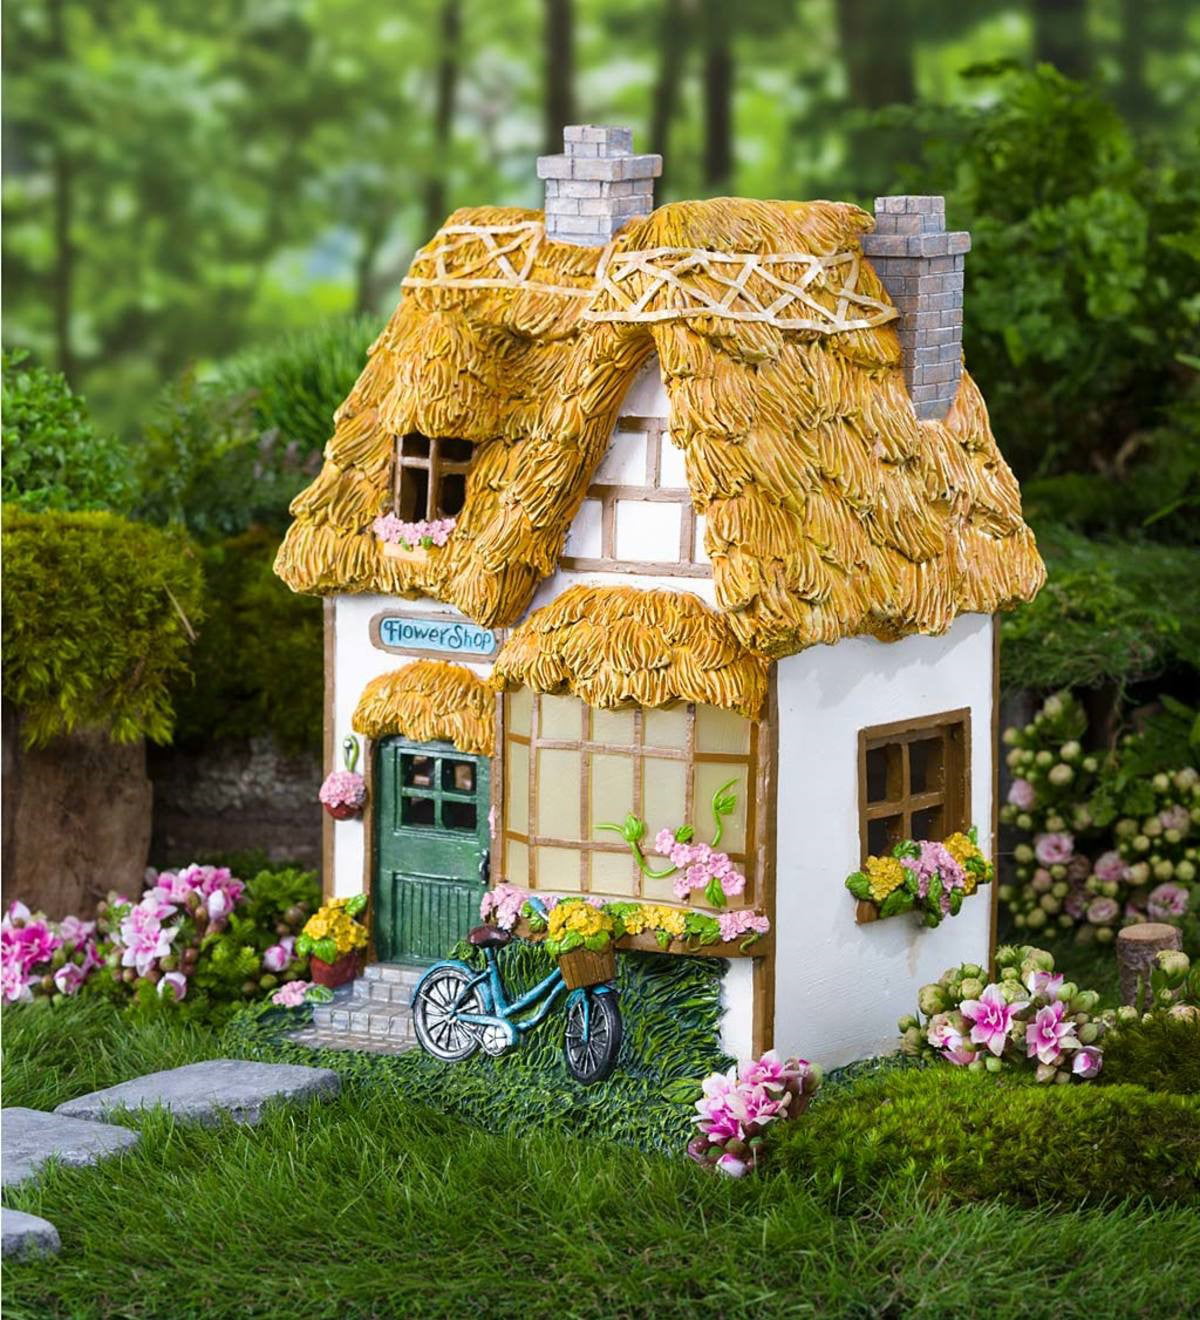 Flower Beds Plants Miniature Fairy Landscape Garden Decor Dollhouse Accessori LE